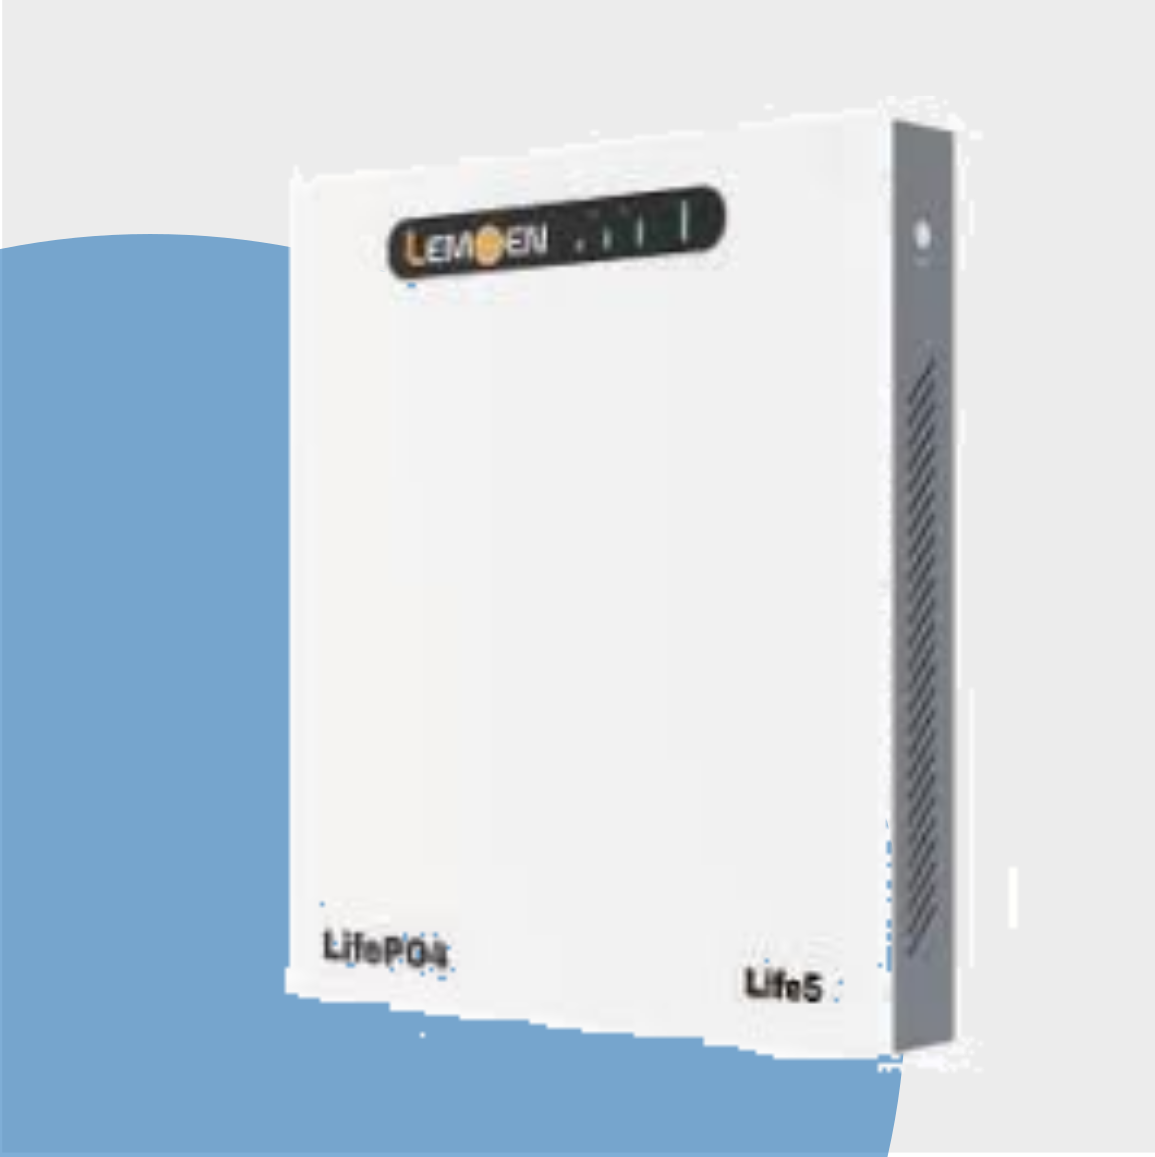 Lemoen WM 5.12kw lithium battery - Oliross Solar